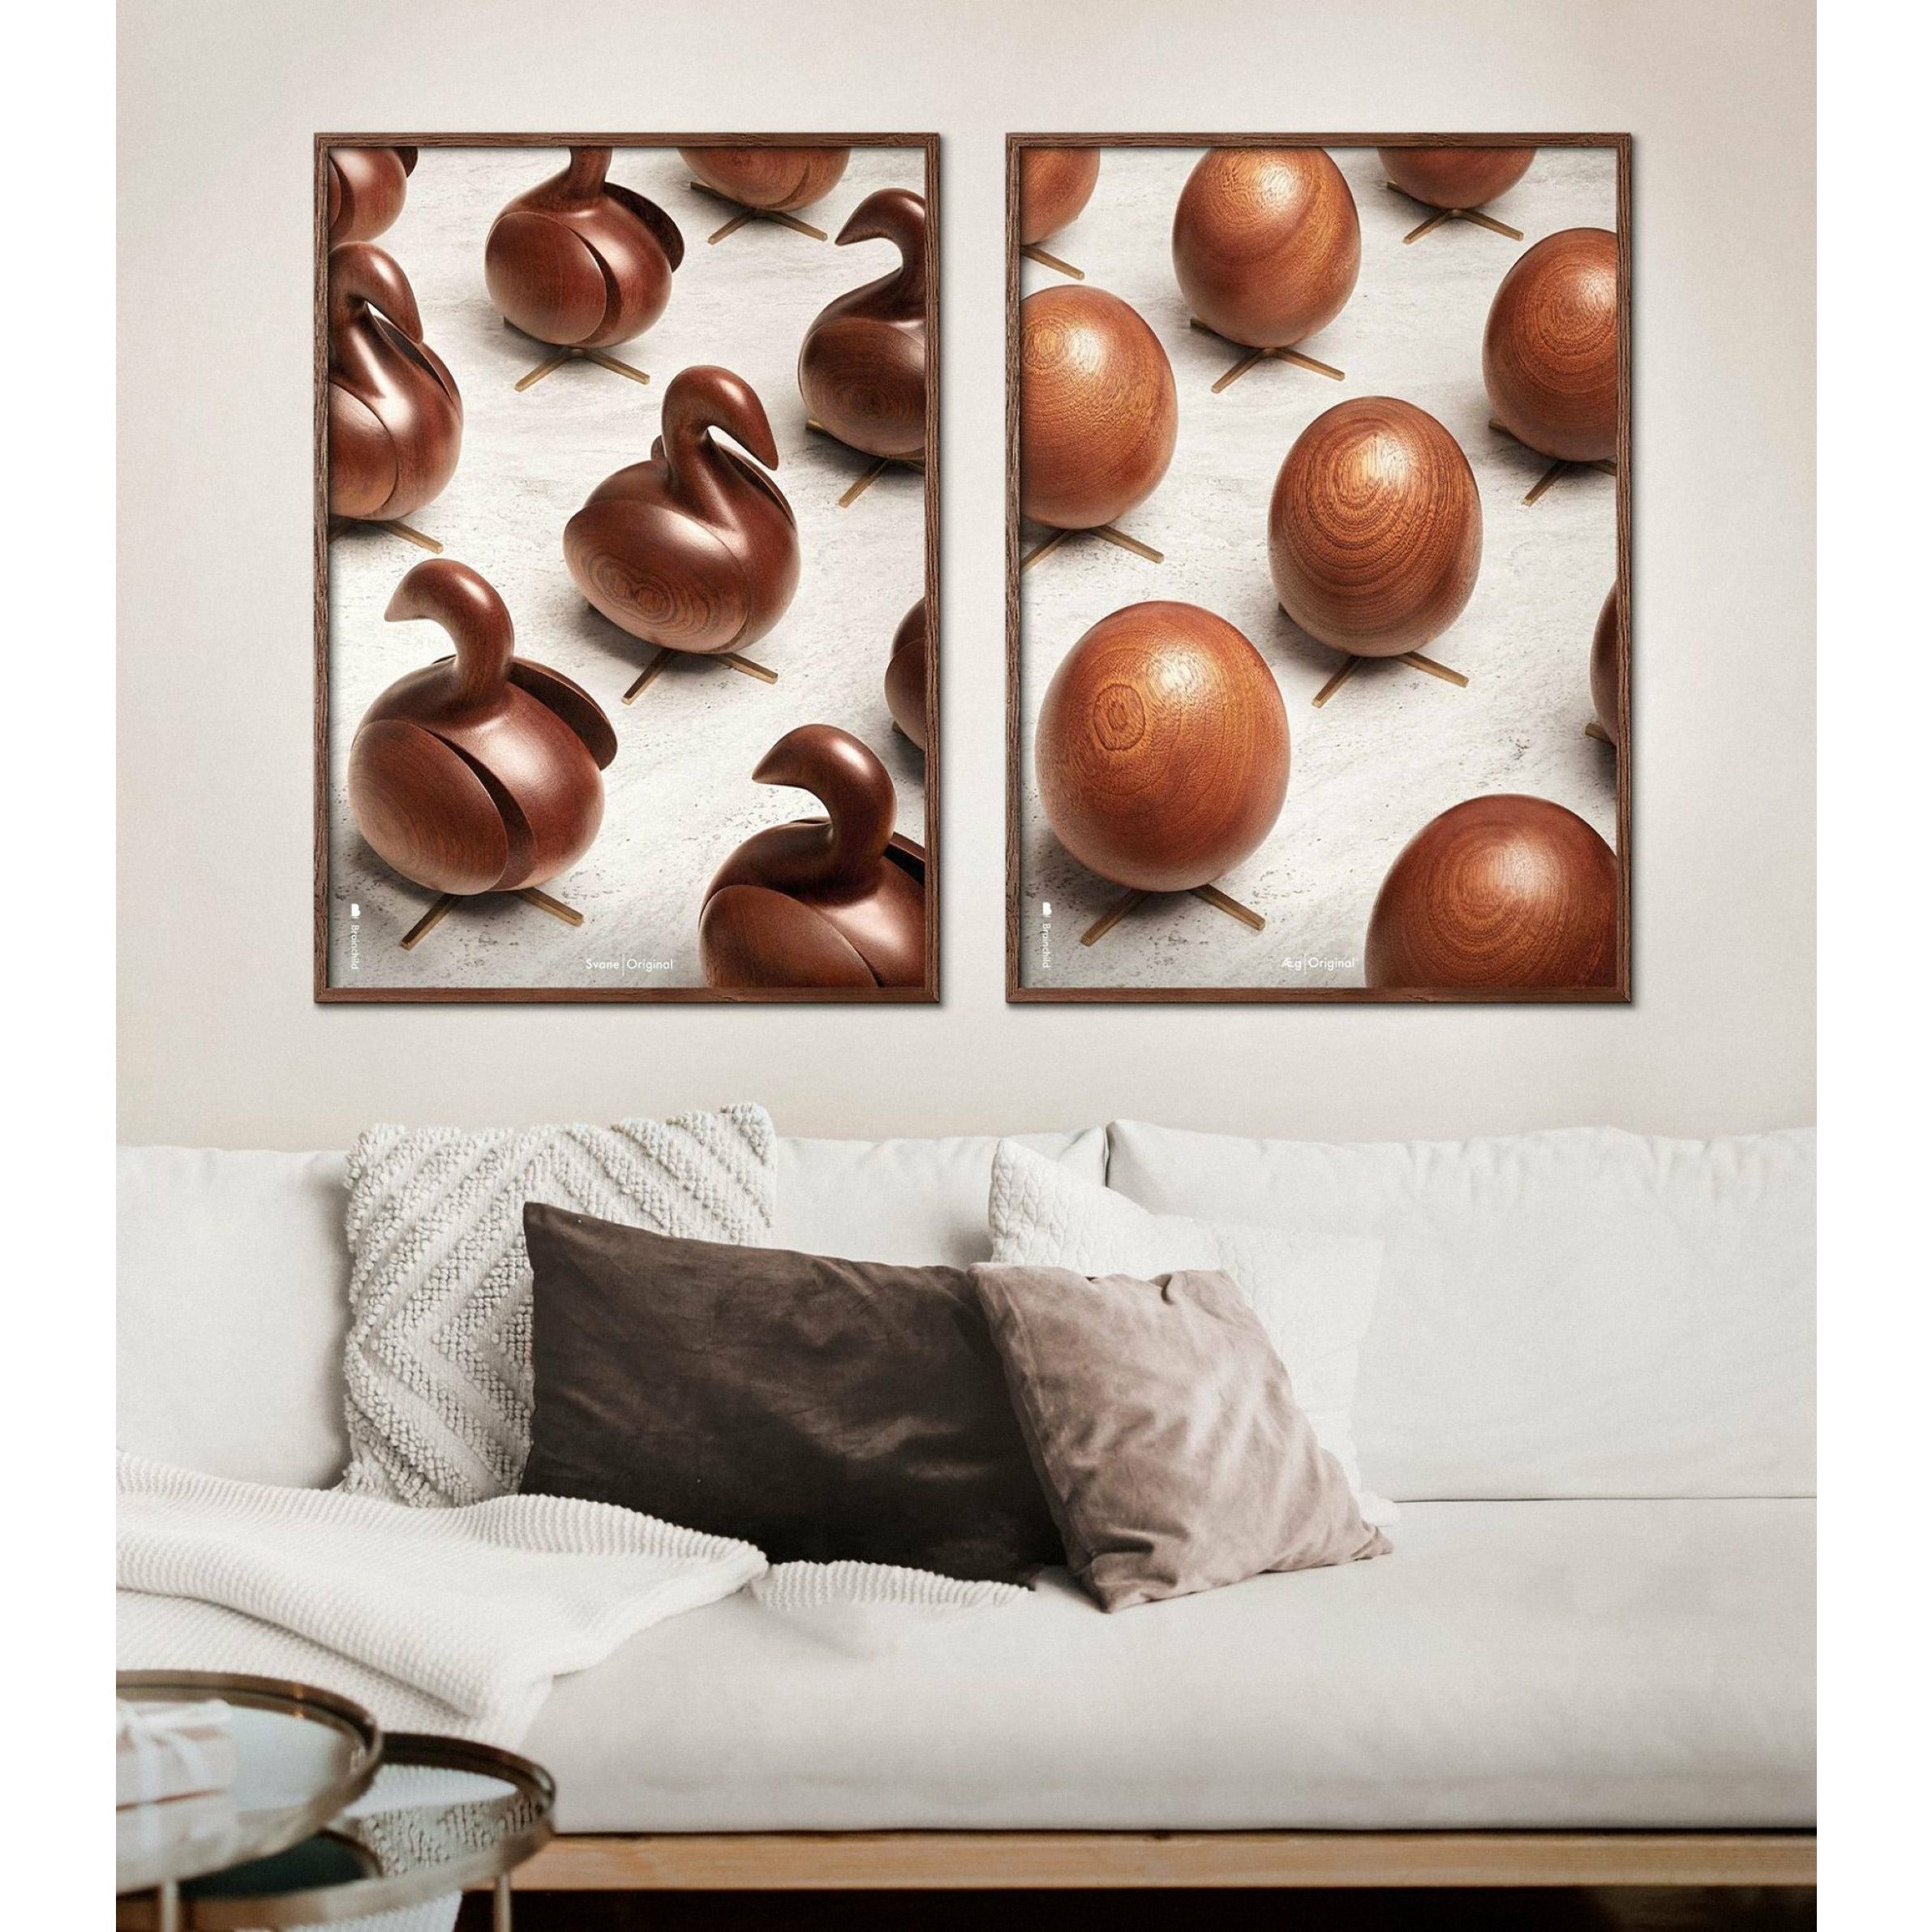 Poster per sfilata di uova di prima cosa, telaio in legno chiaro, 70x100 cm